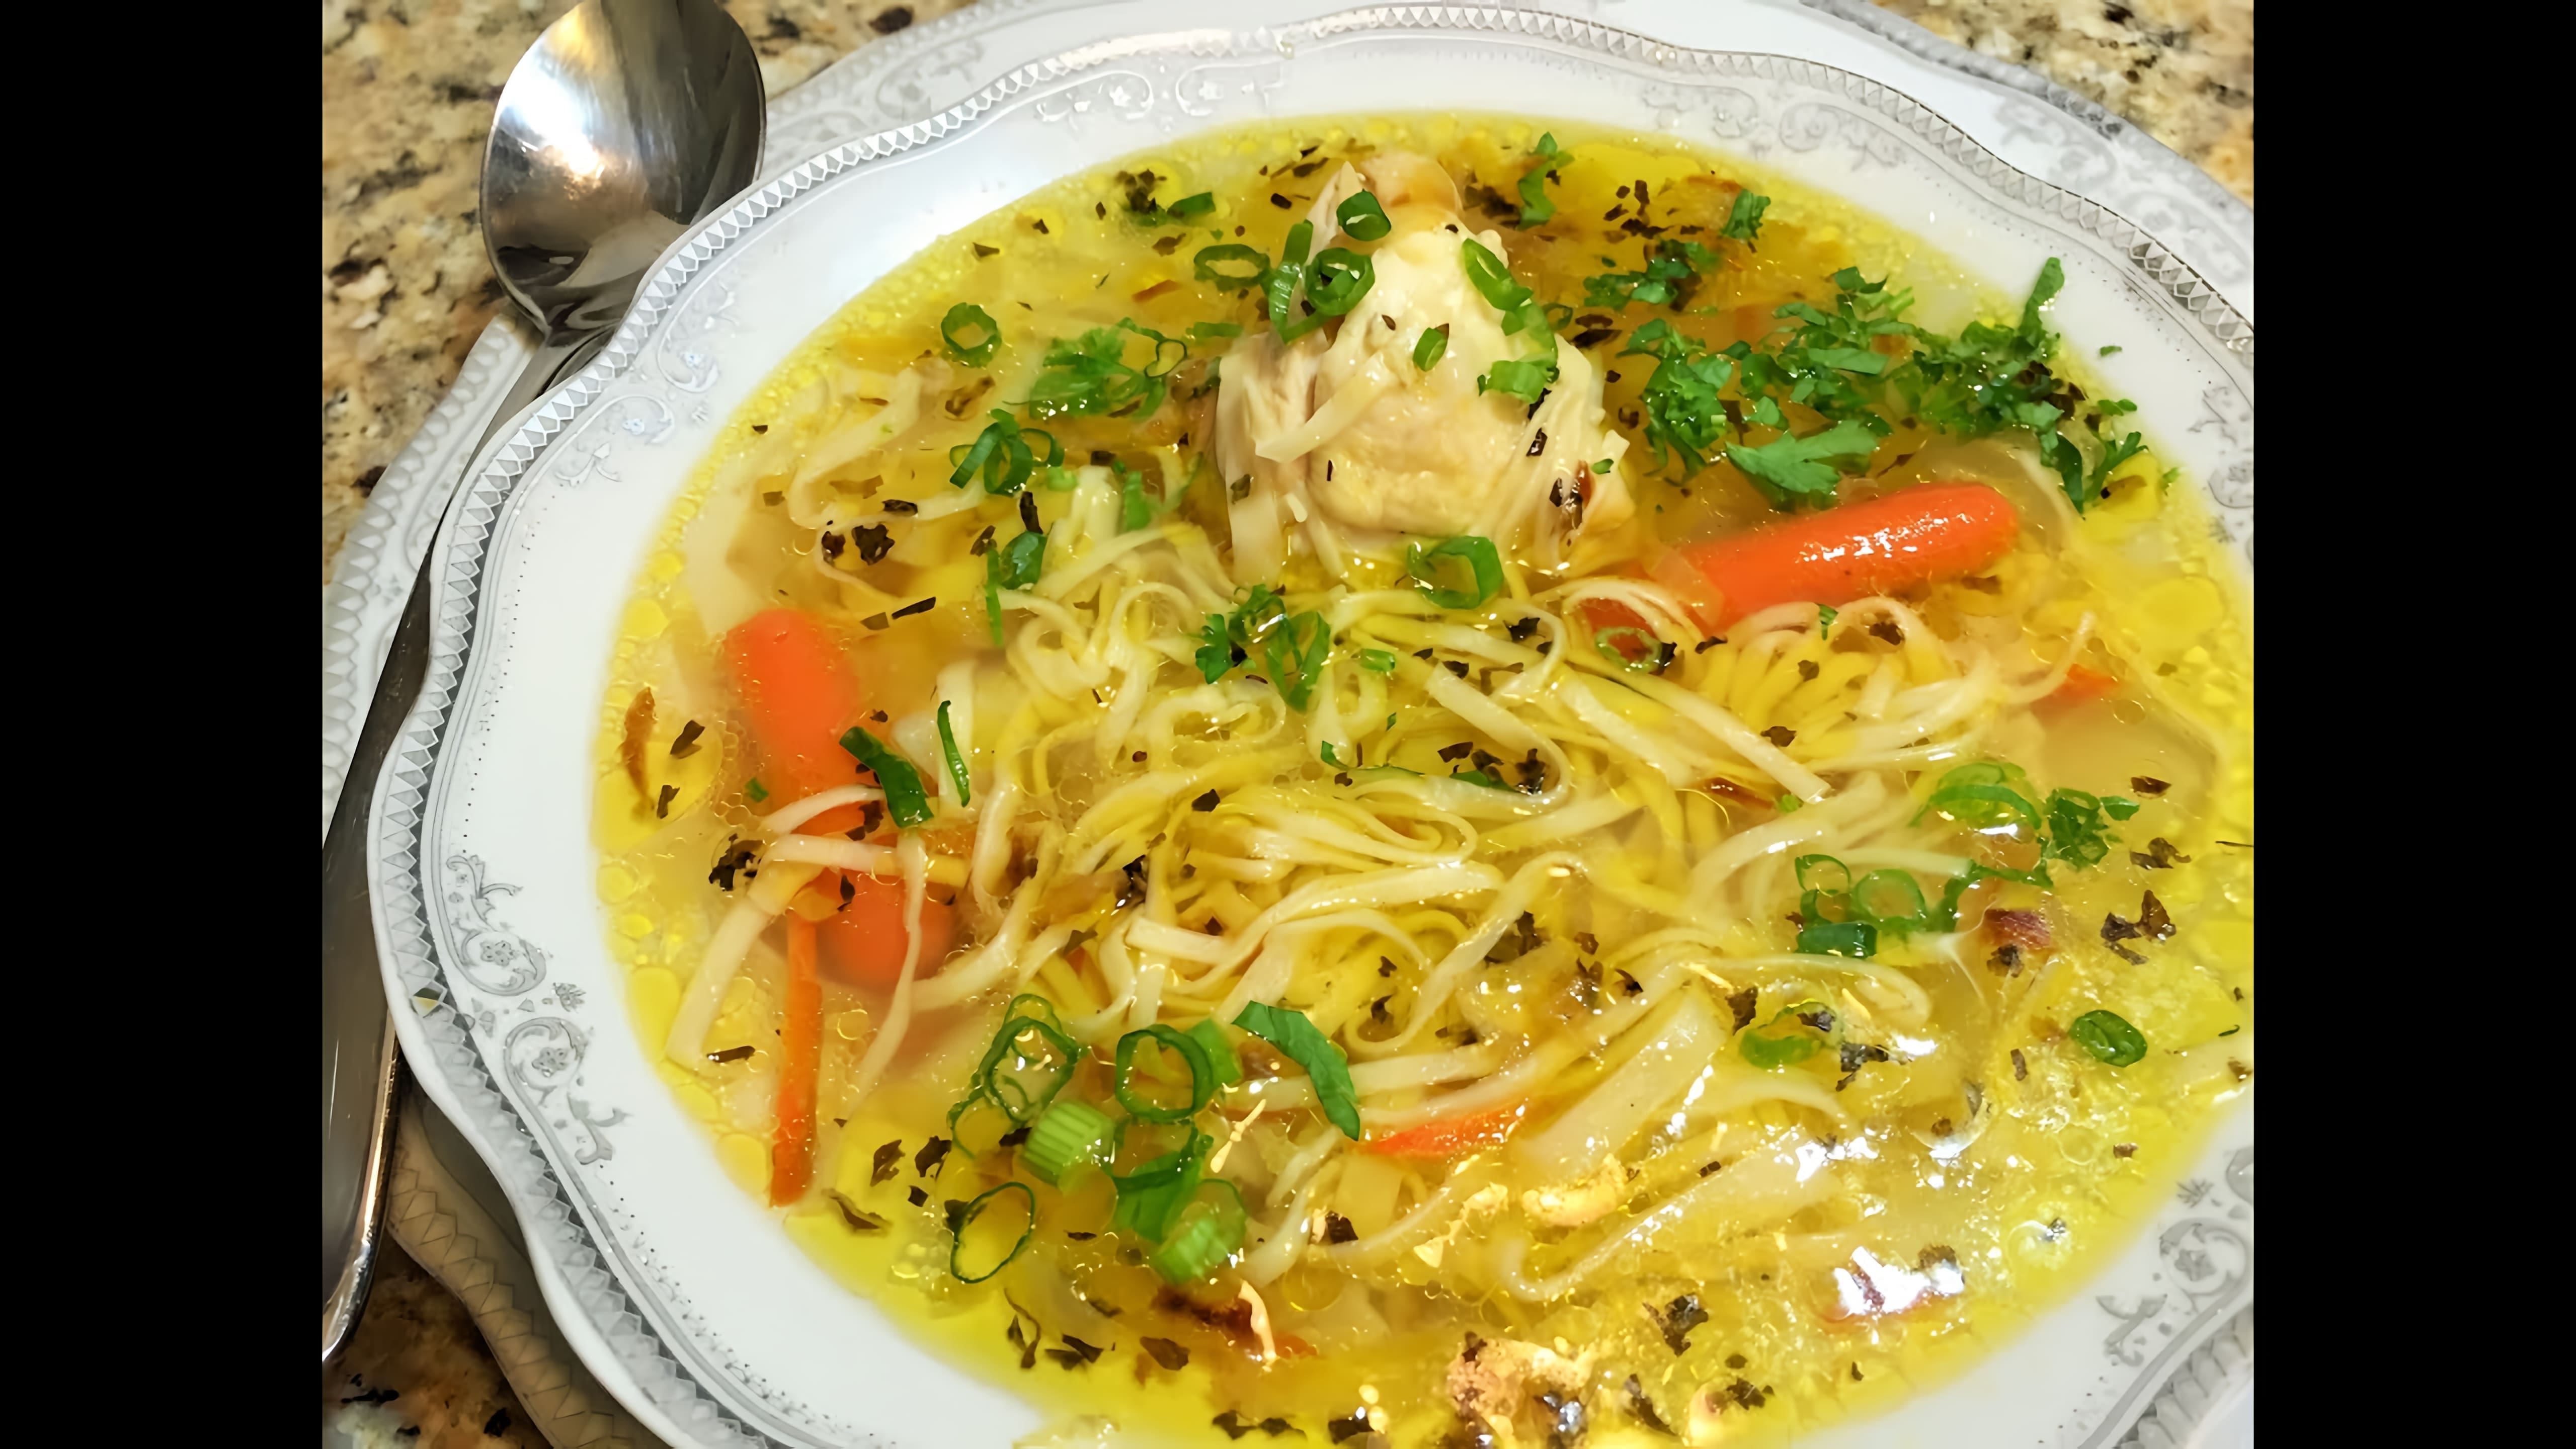 В этом видео демонстрируется процесс приготовления домашнего куриного супа с лапшой